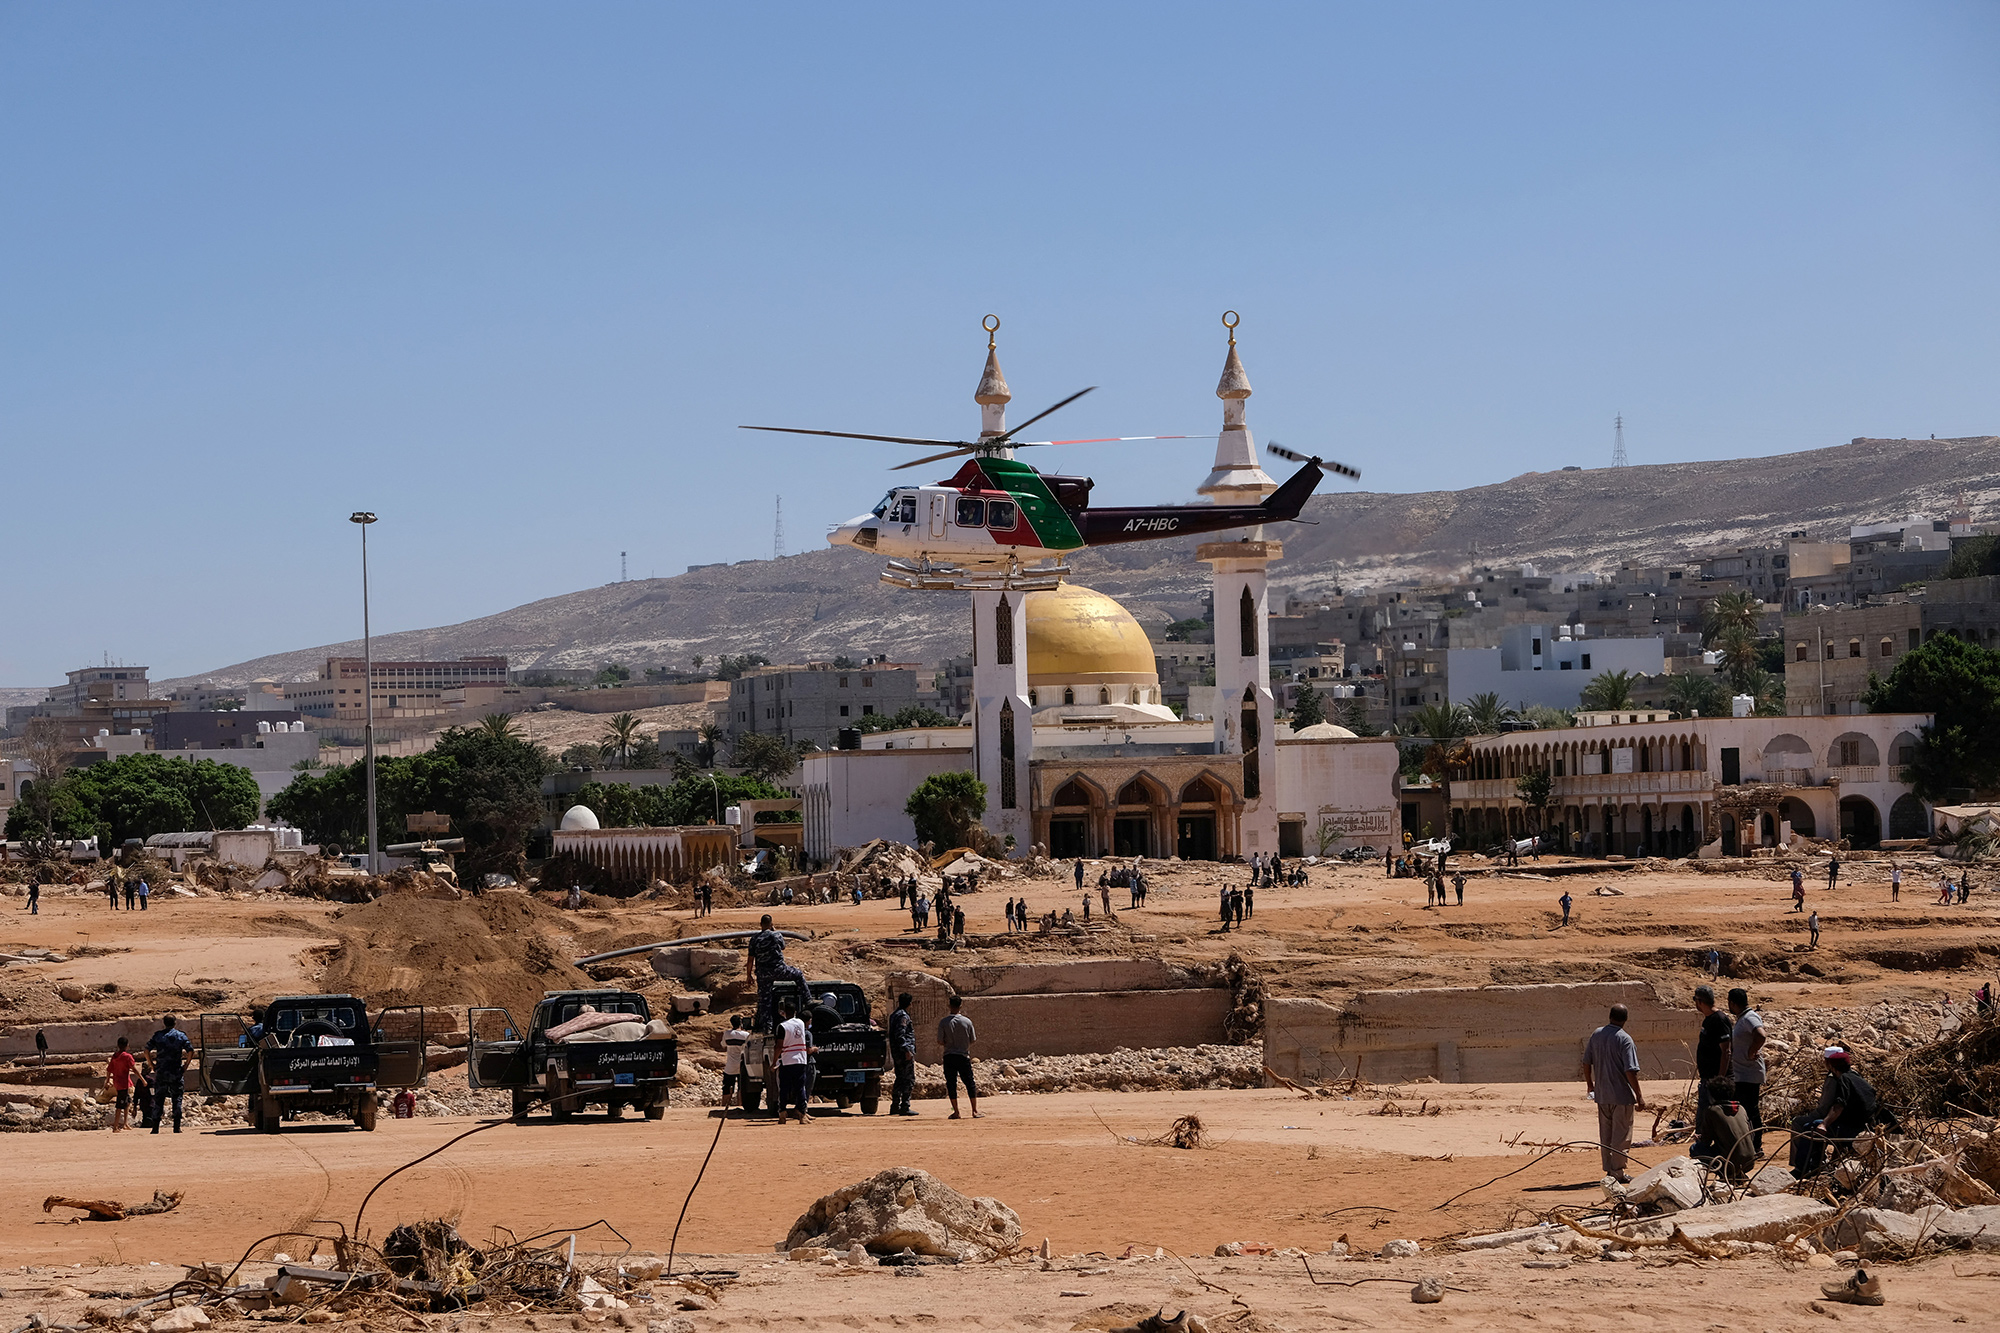 Мечеть в Дерне после наводнения, 13 сентября

Ливийские власти (ПНЕ) потребовали провести расследование обстоятельств обрушения плотины близ города Дерна, которое привело к значительному увеличению числа жертв в этом регионе.